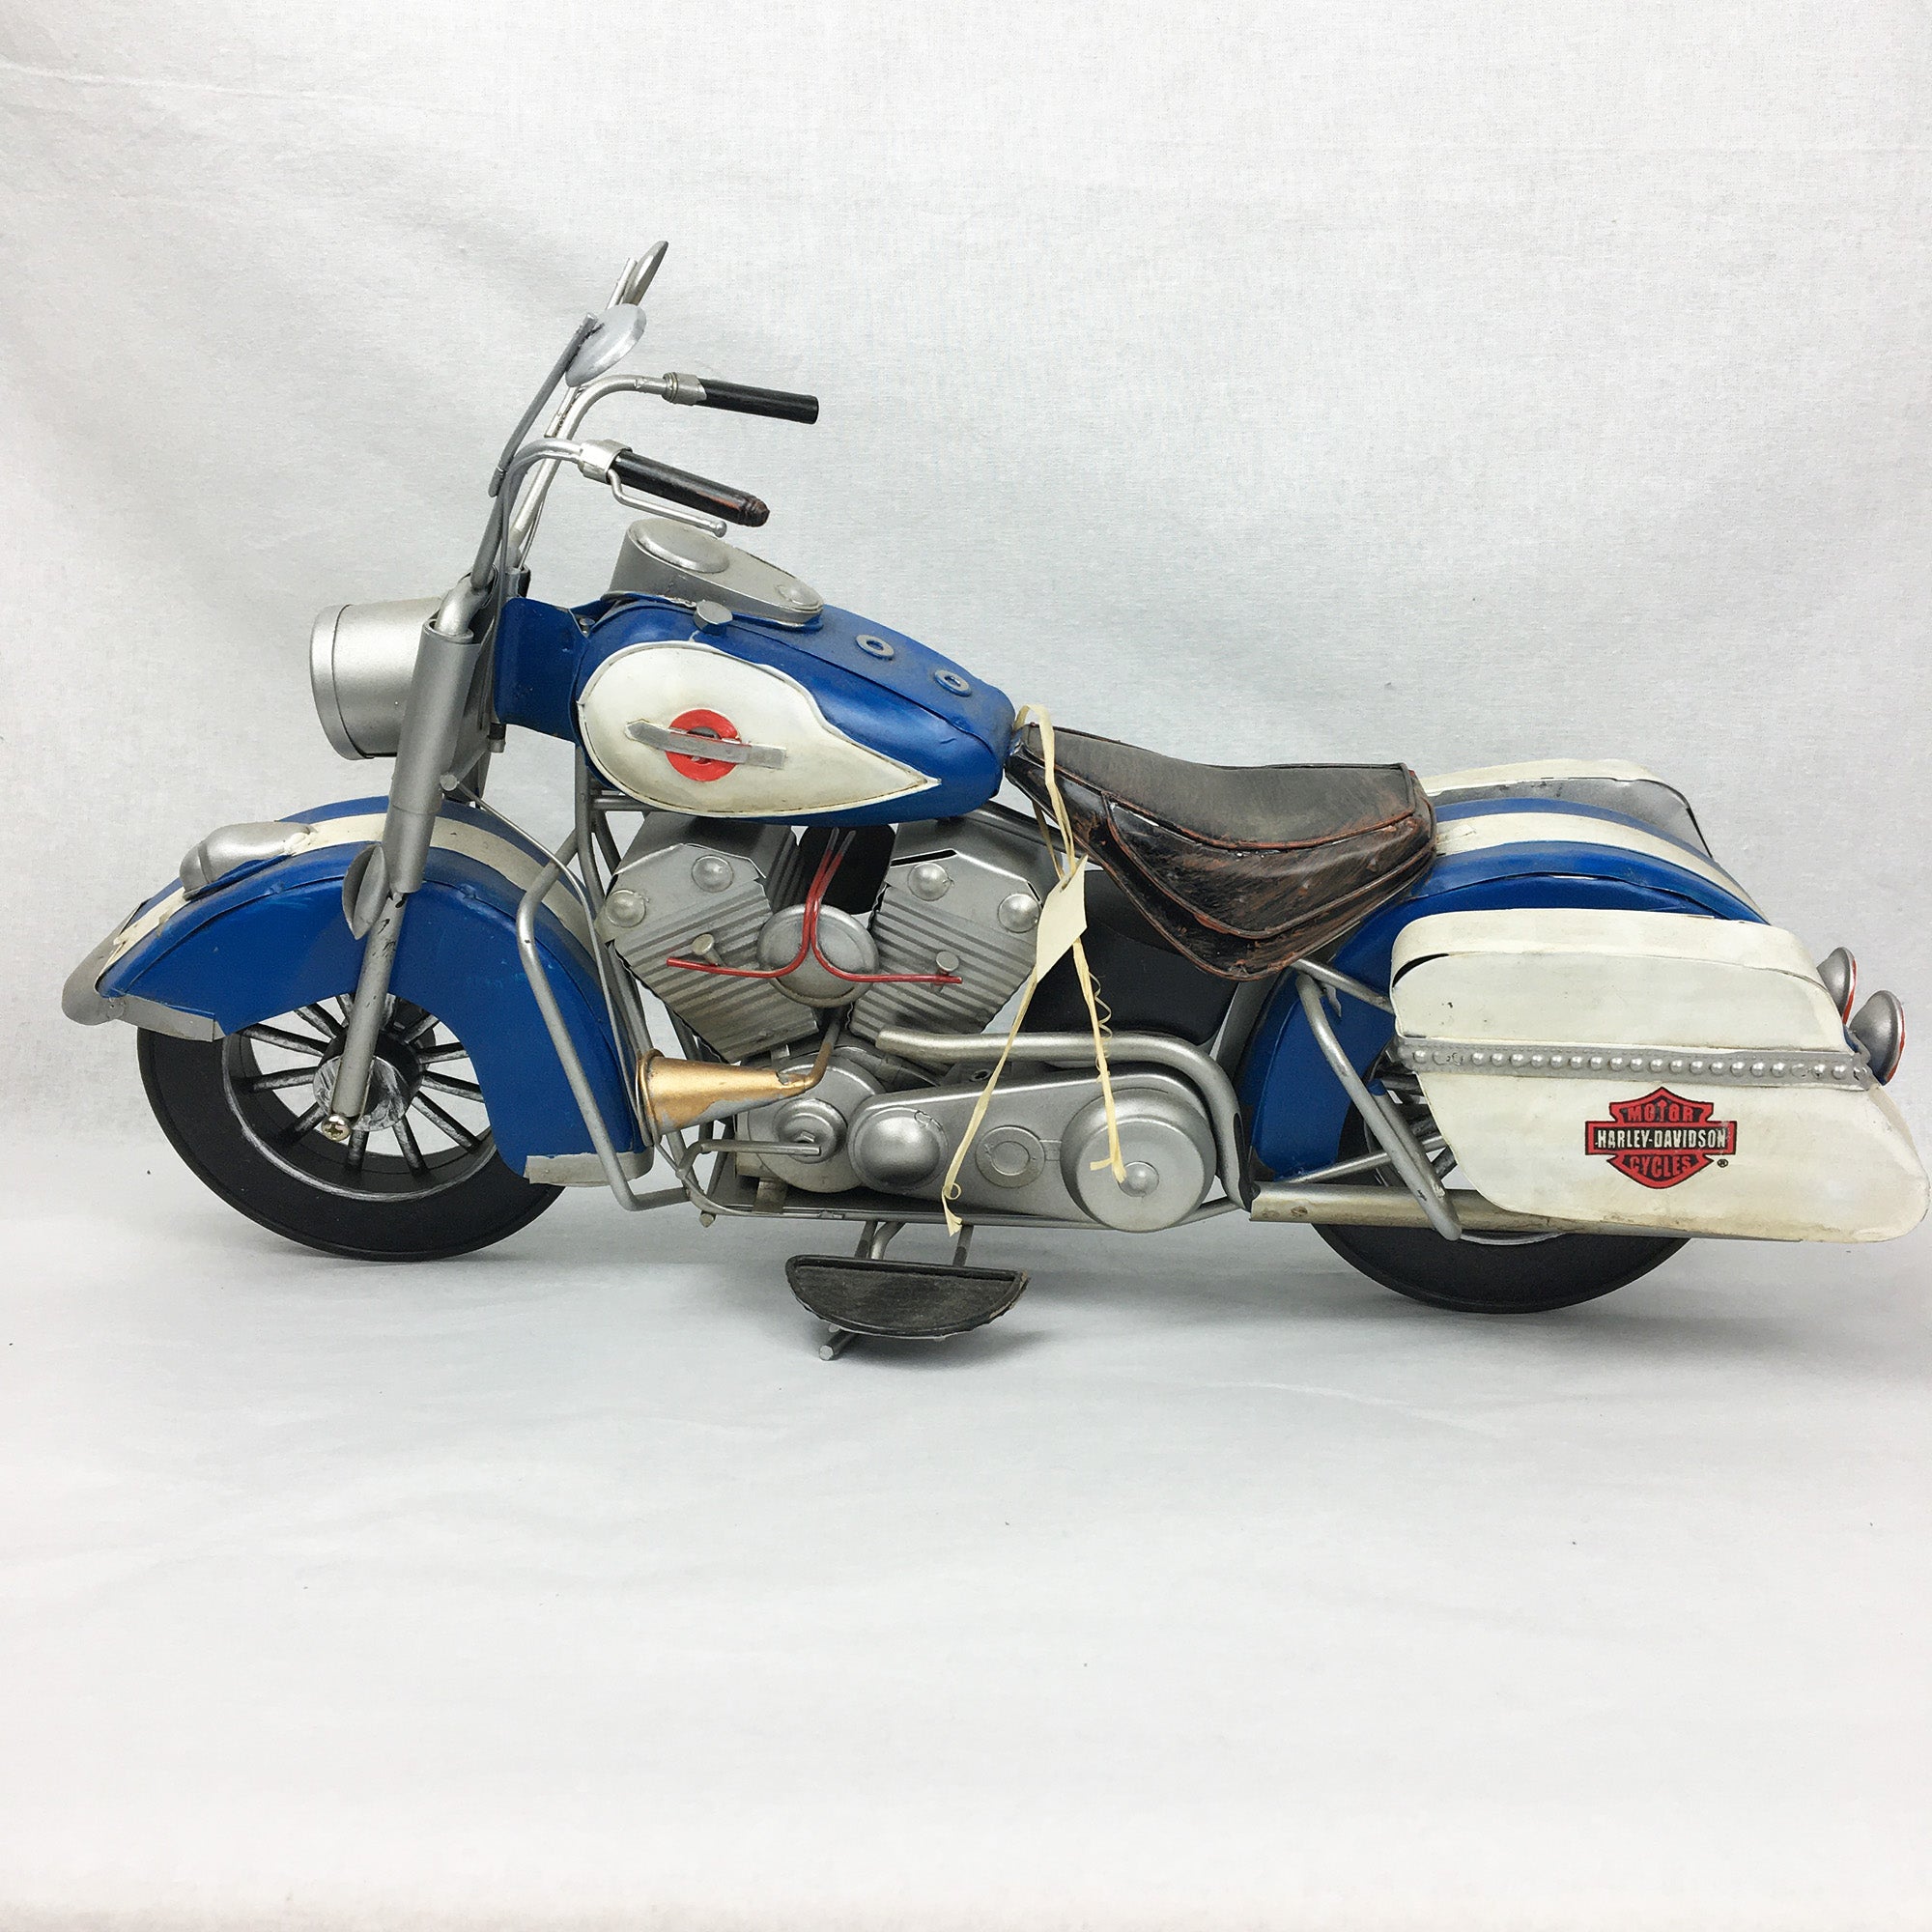 Motocyclette décorative 15'' bleu et blanc - cadeau unique Miniature  * Chacun de nos produits sont uniques. Pour cette raison veuillez vérifier la disponibilité en magasin en nous téléphonant au 819 326-3563 avant votre achat.